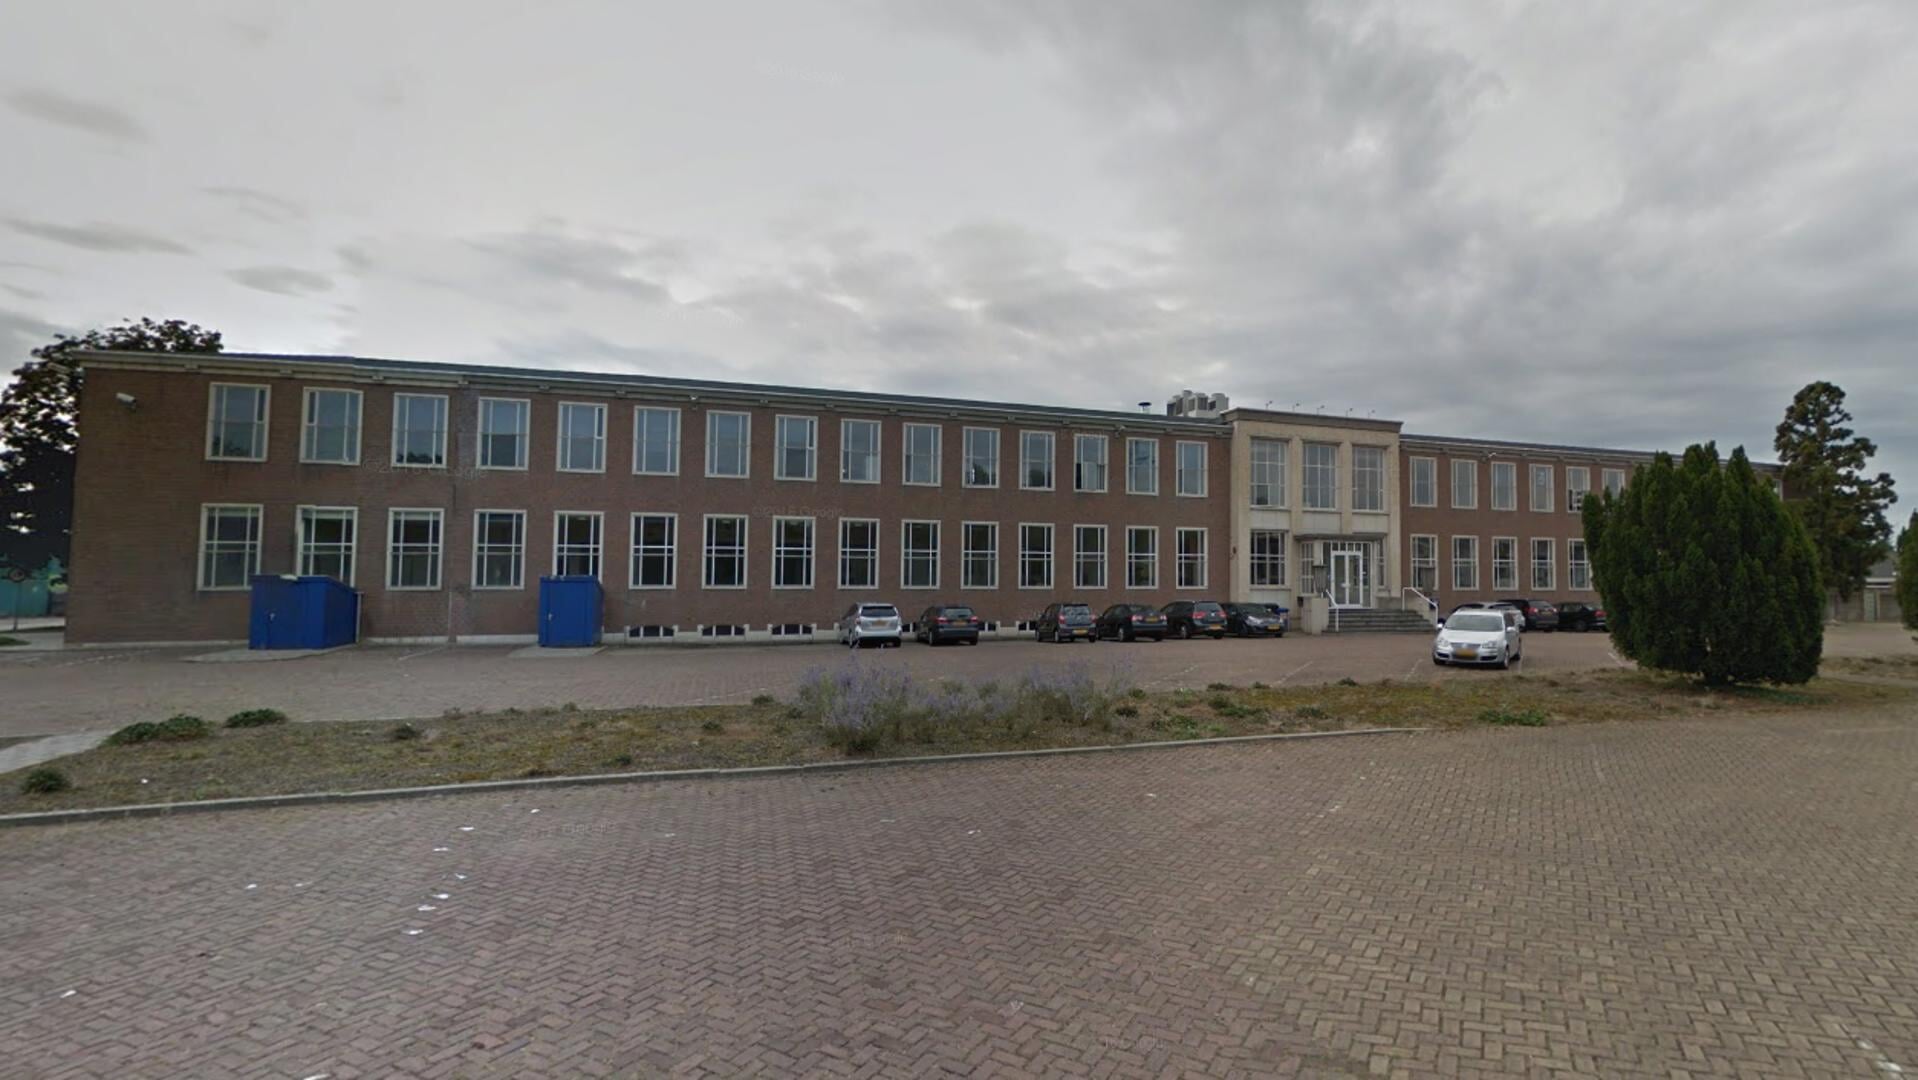 Het voormalige hoofdkantoor van BelCompany aan de Wageningselaan 2 dat nu in gebruik als crisisnoodopvang (CNO) 